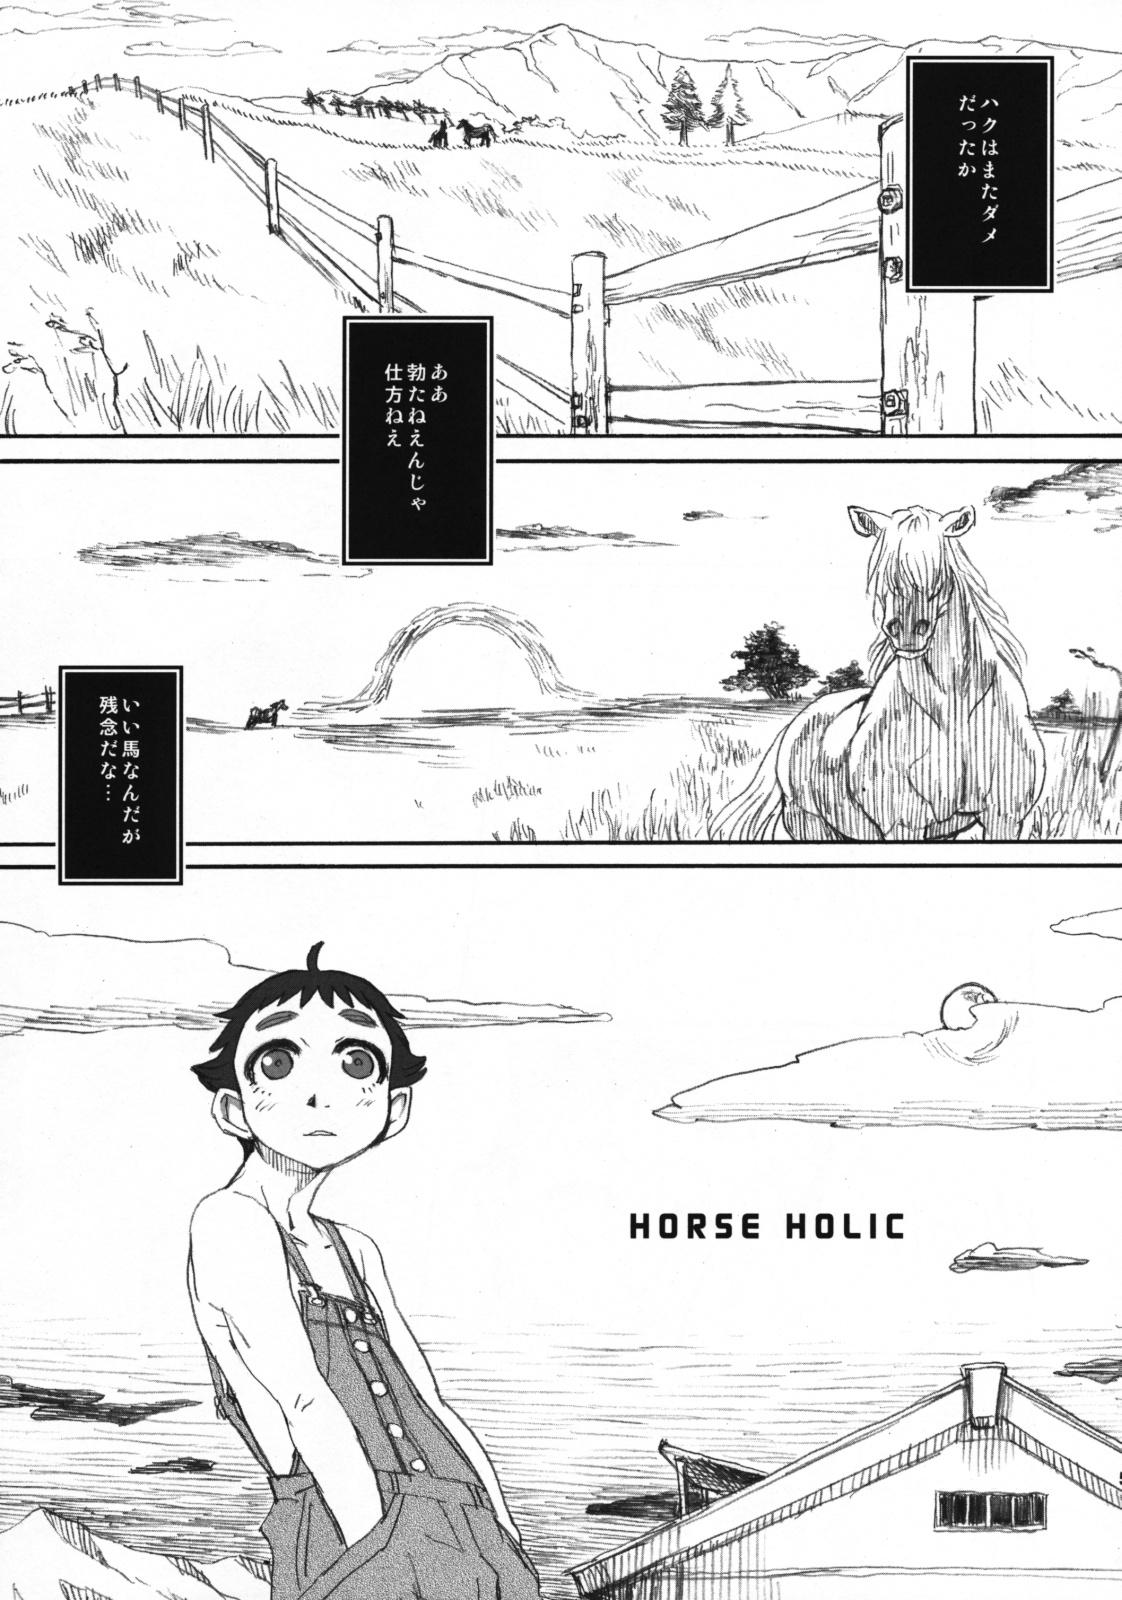 Horse Holic 3